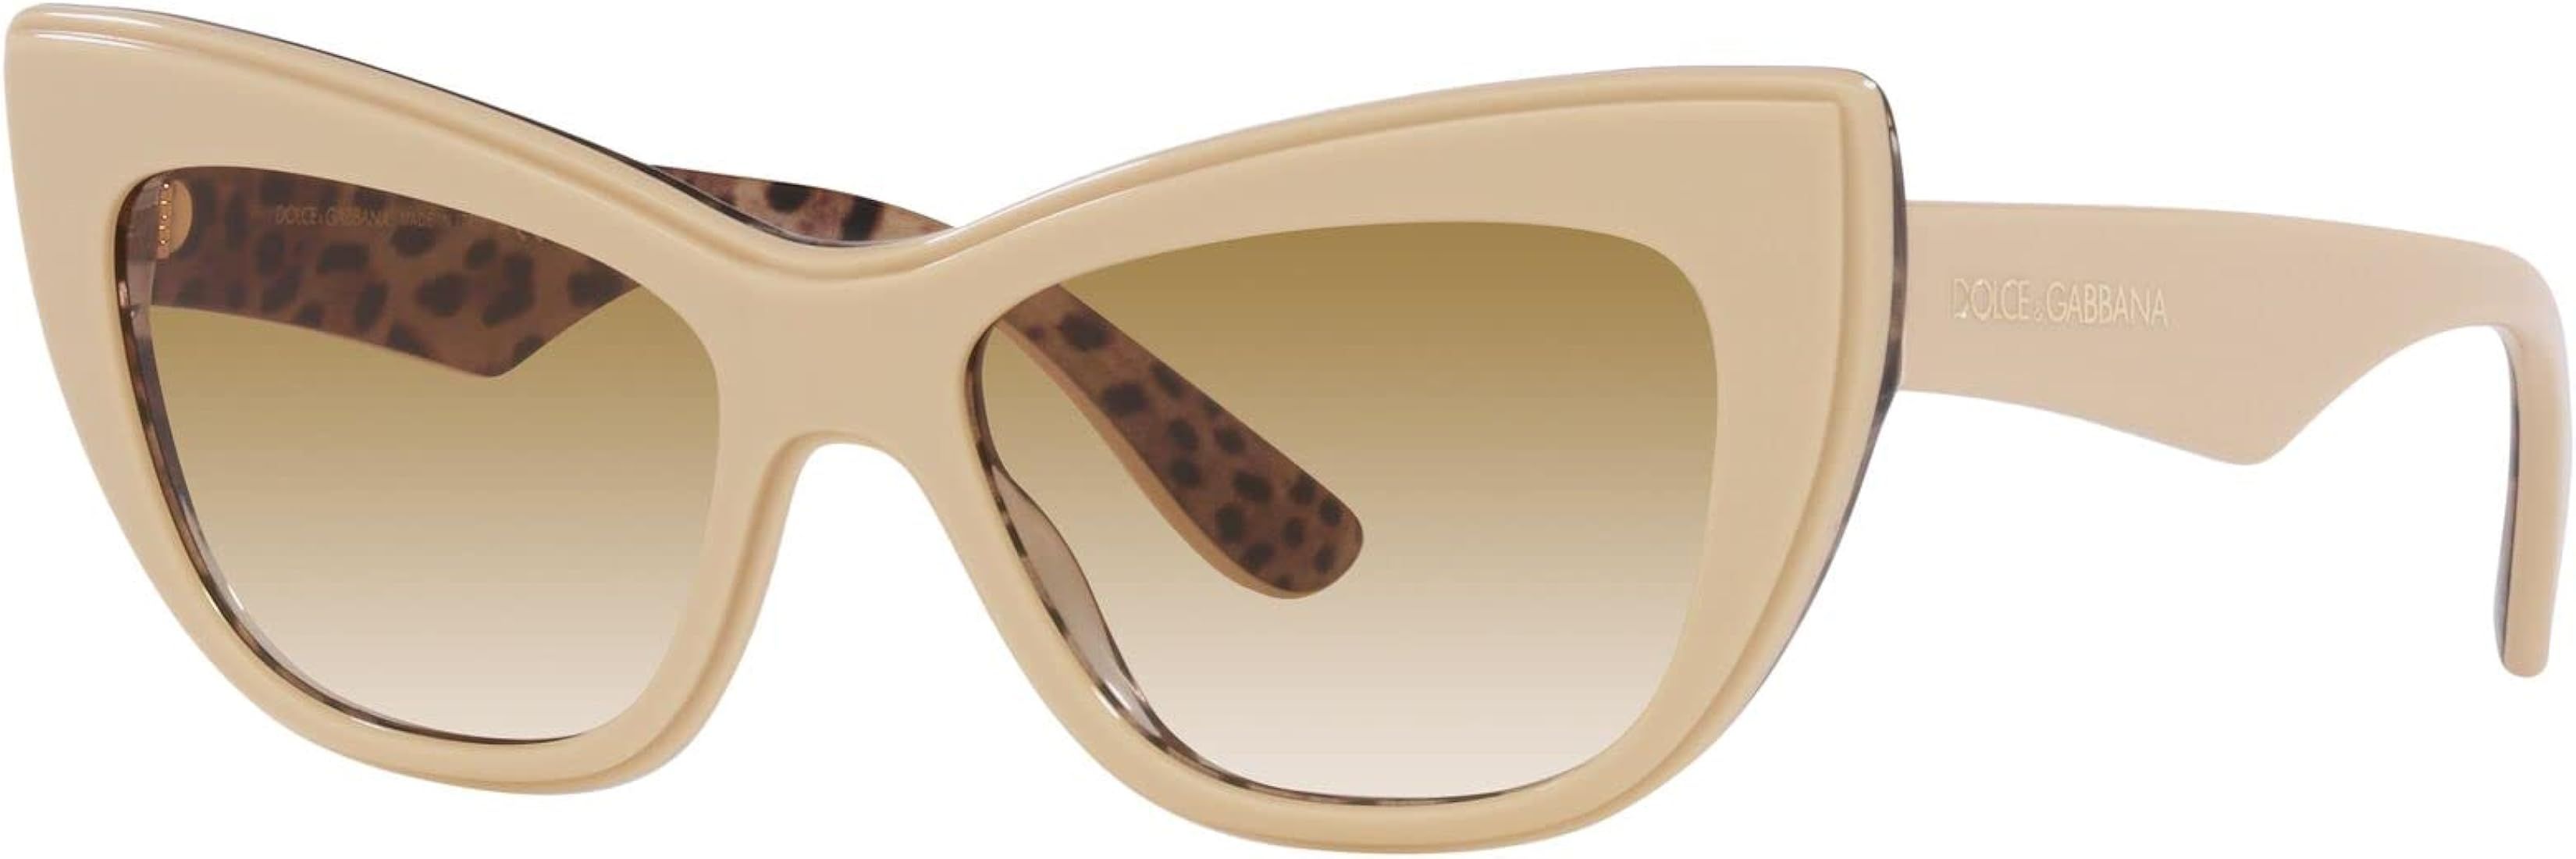 Dolce & Gabbana Sunglasses DG 4417 338113 White Leo | Amazon (US)